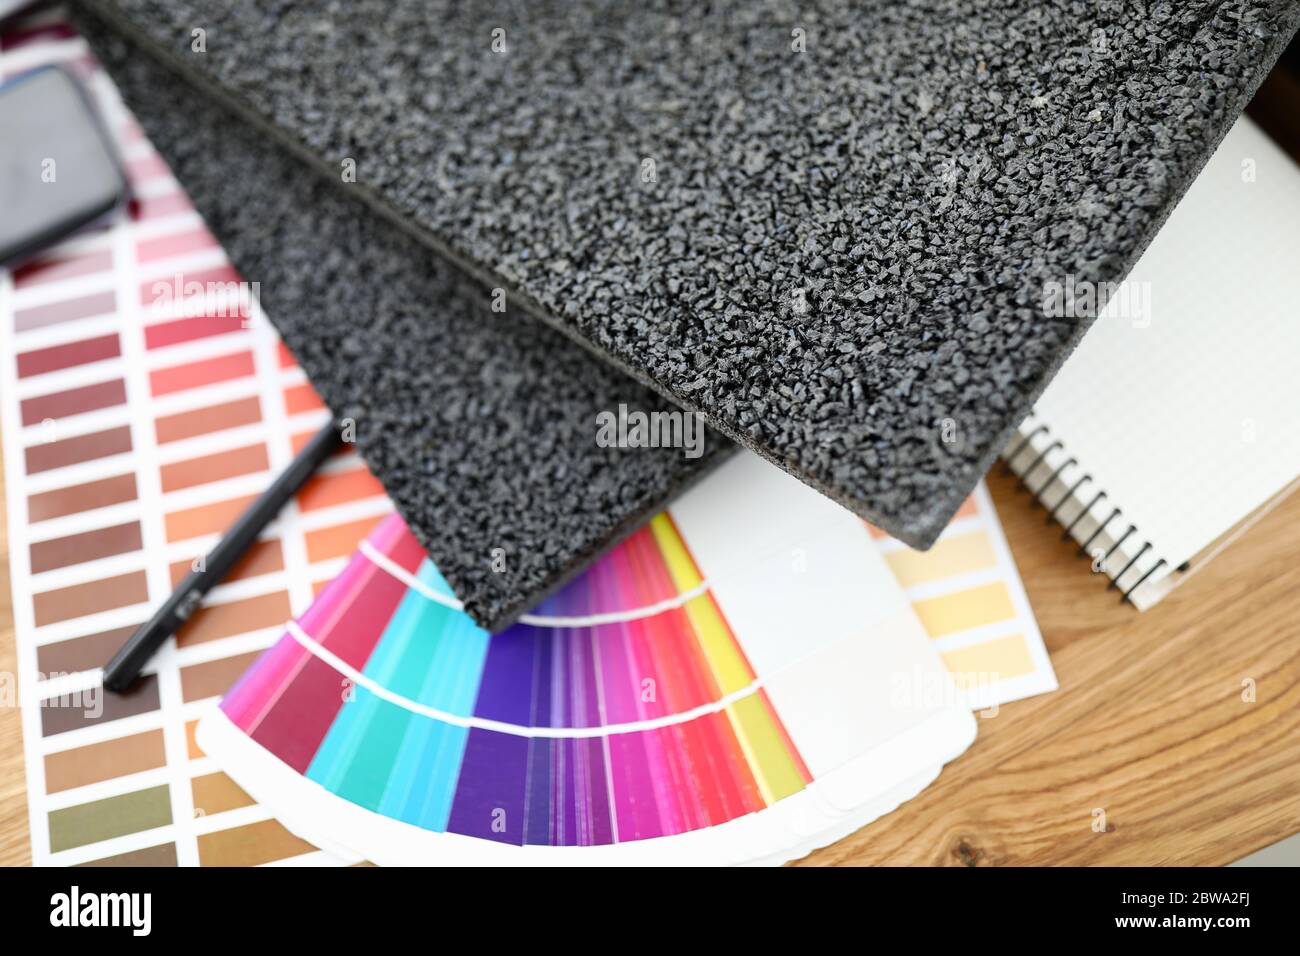 Sul tavolo sono presenti dei campioni di tappeti con colori luminosi Foto Stock